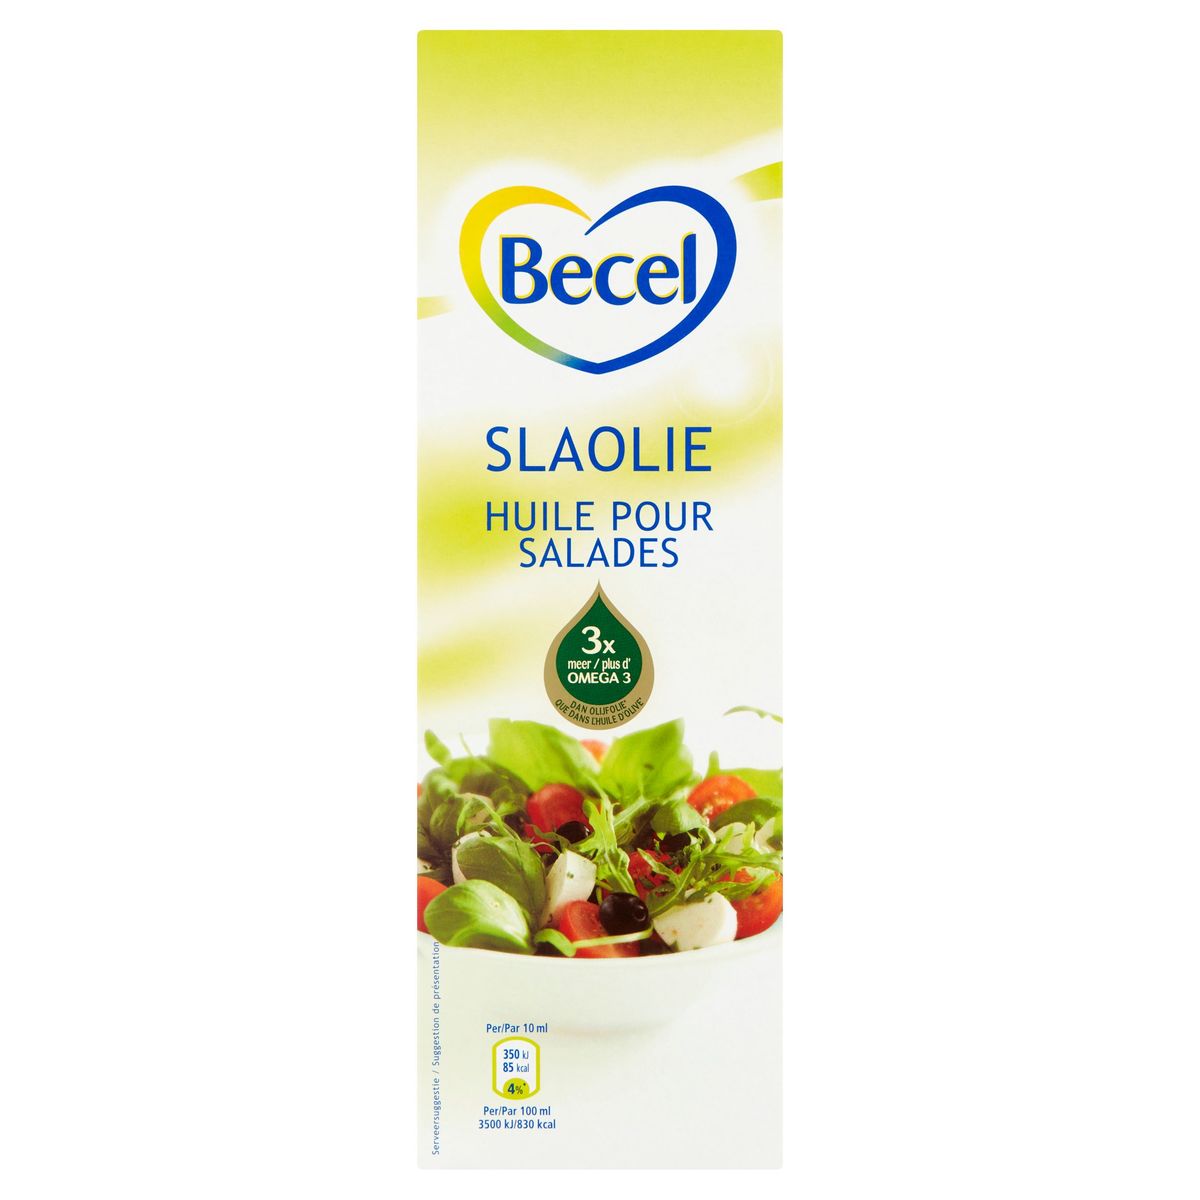 Becel | Huile pour salades | Oméga 3 | 500ml